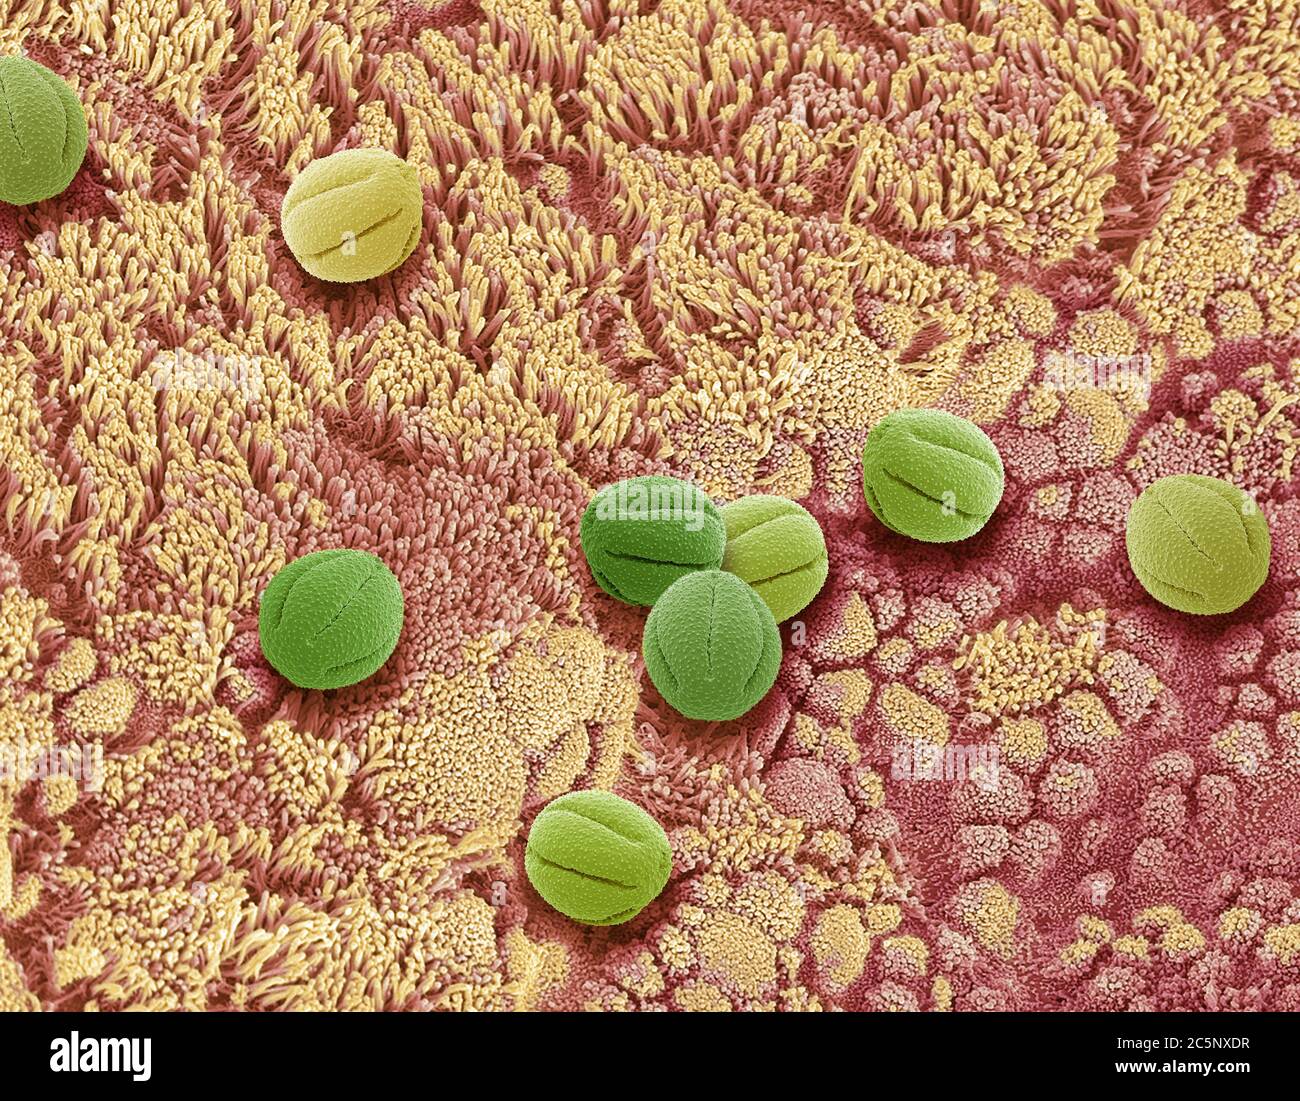 Image composite de l'épithélium nasal et du pollen. Micrographe électronique à balayage coloré (SEM) de la surface de l'épithélium nasal inhalé dans le pollen. Banque D'Images